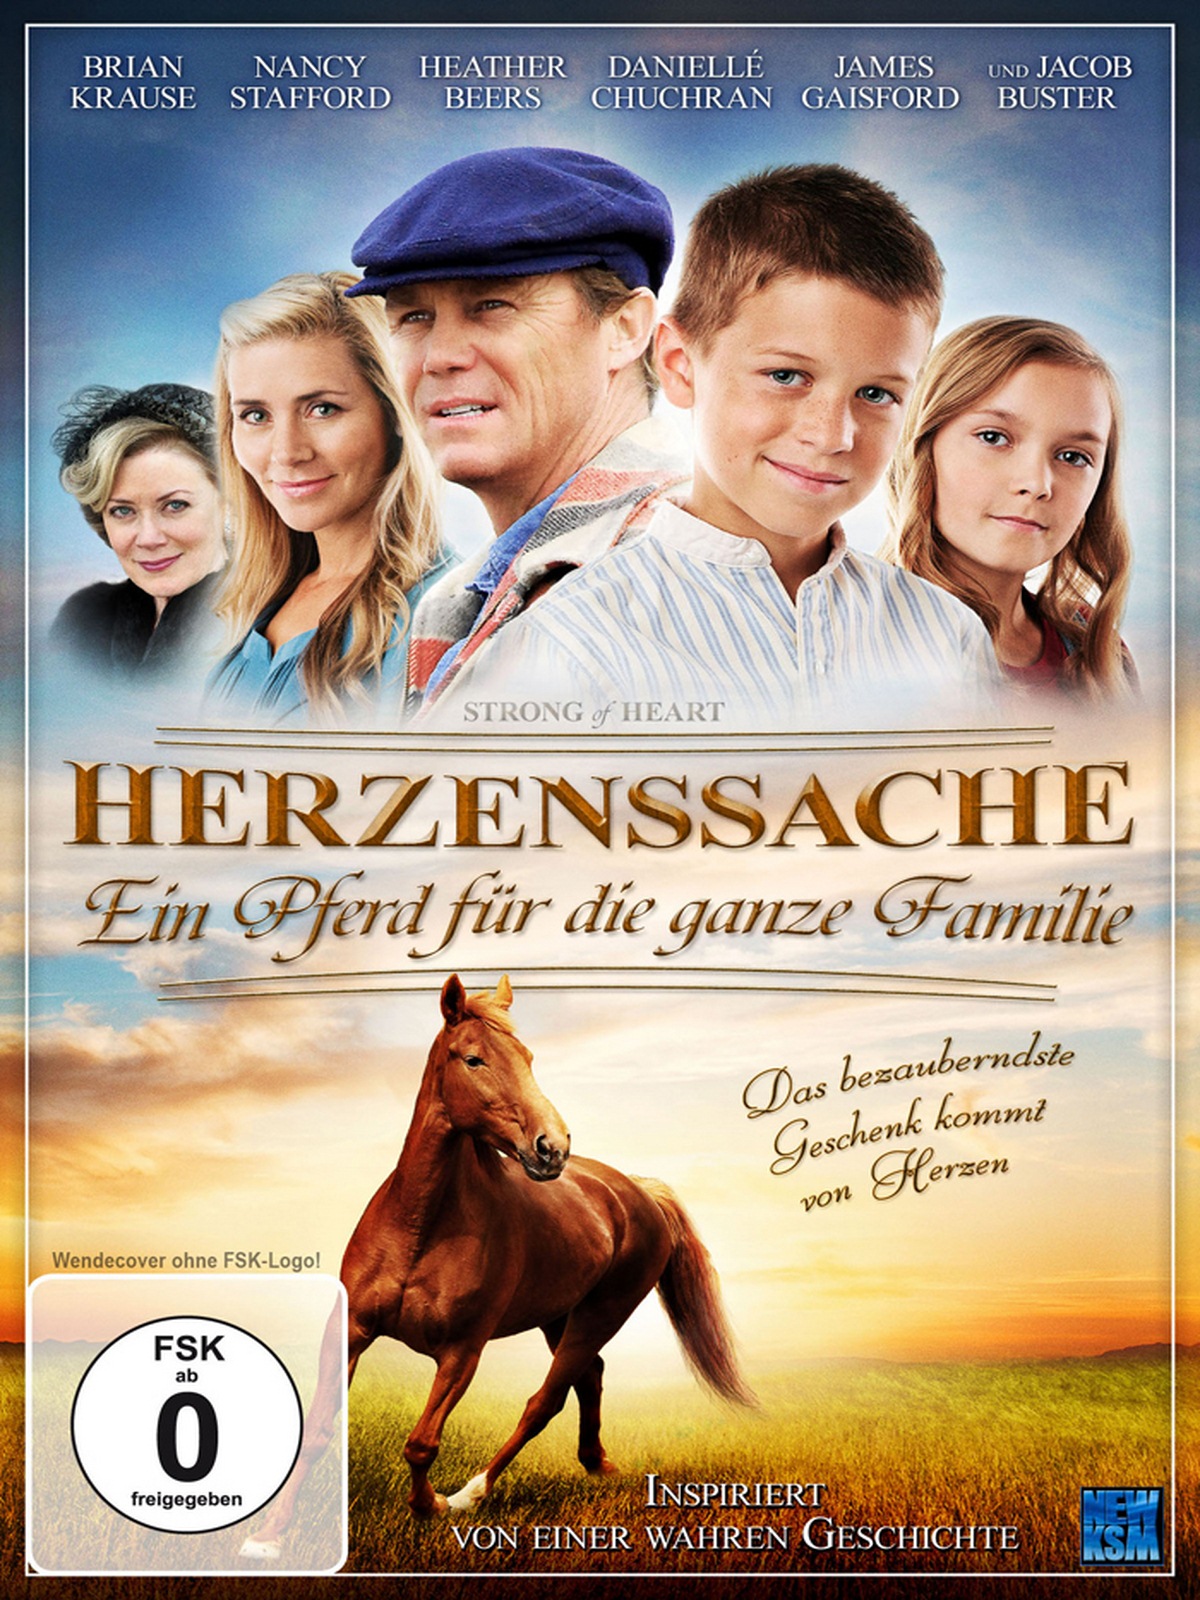 Herzenssache - Ein Pferd für die ganze Familie in DVD - Herzenssache ...